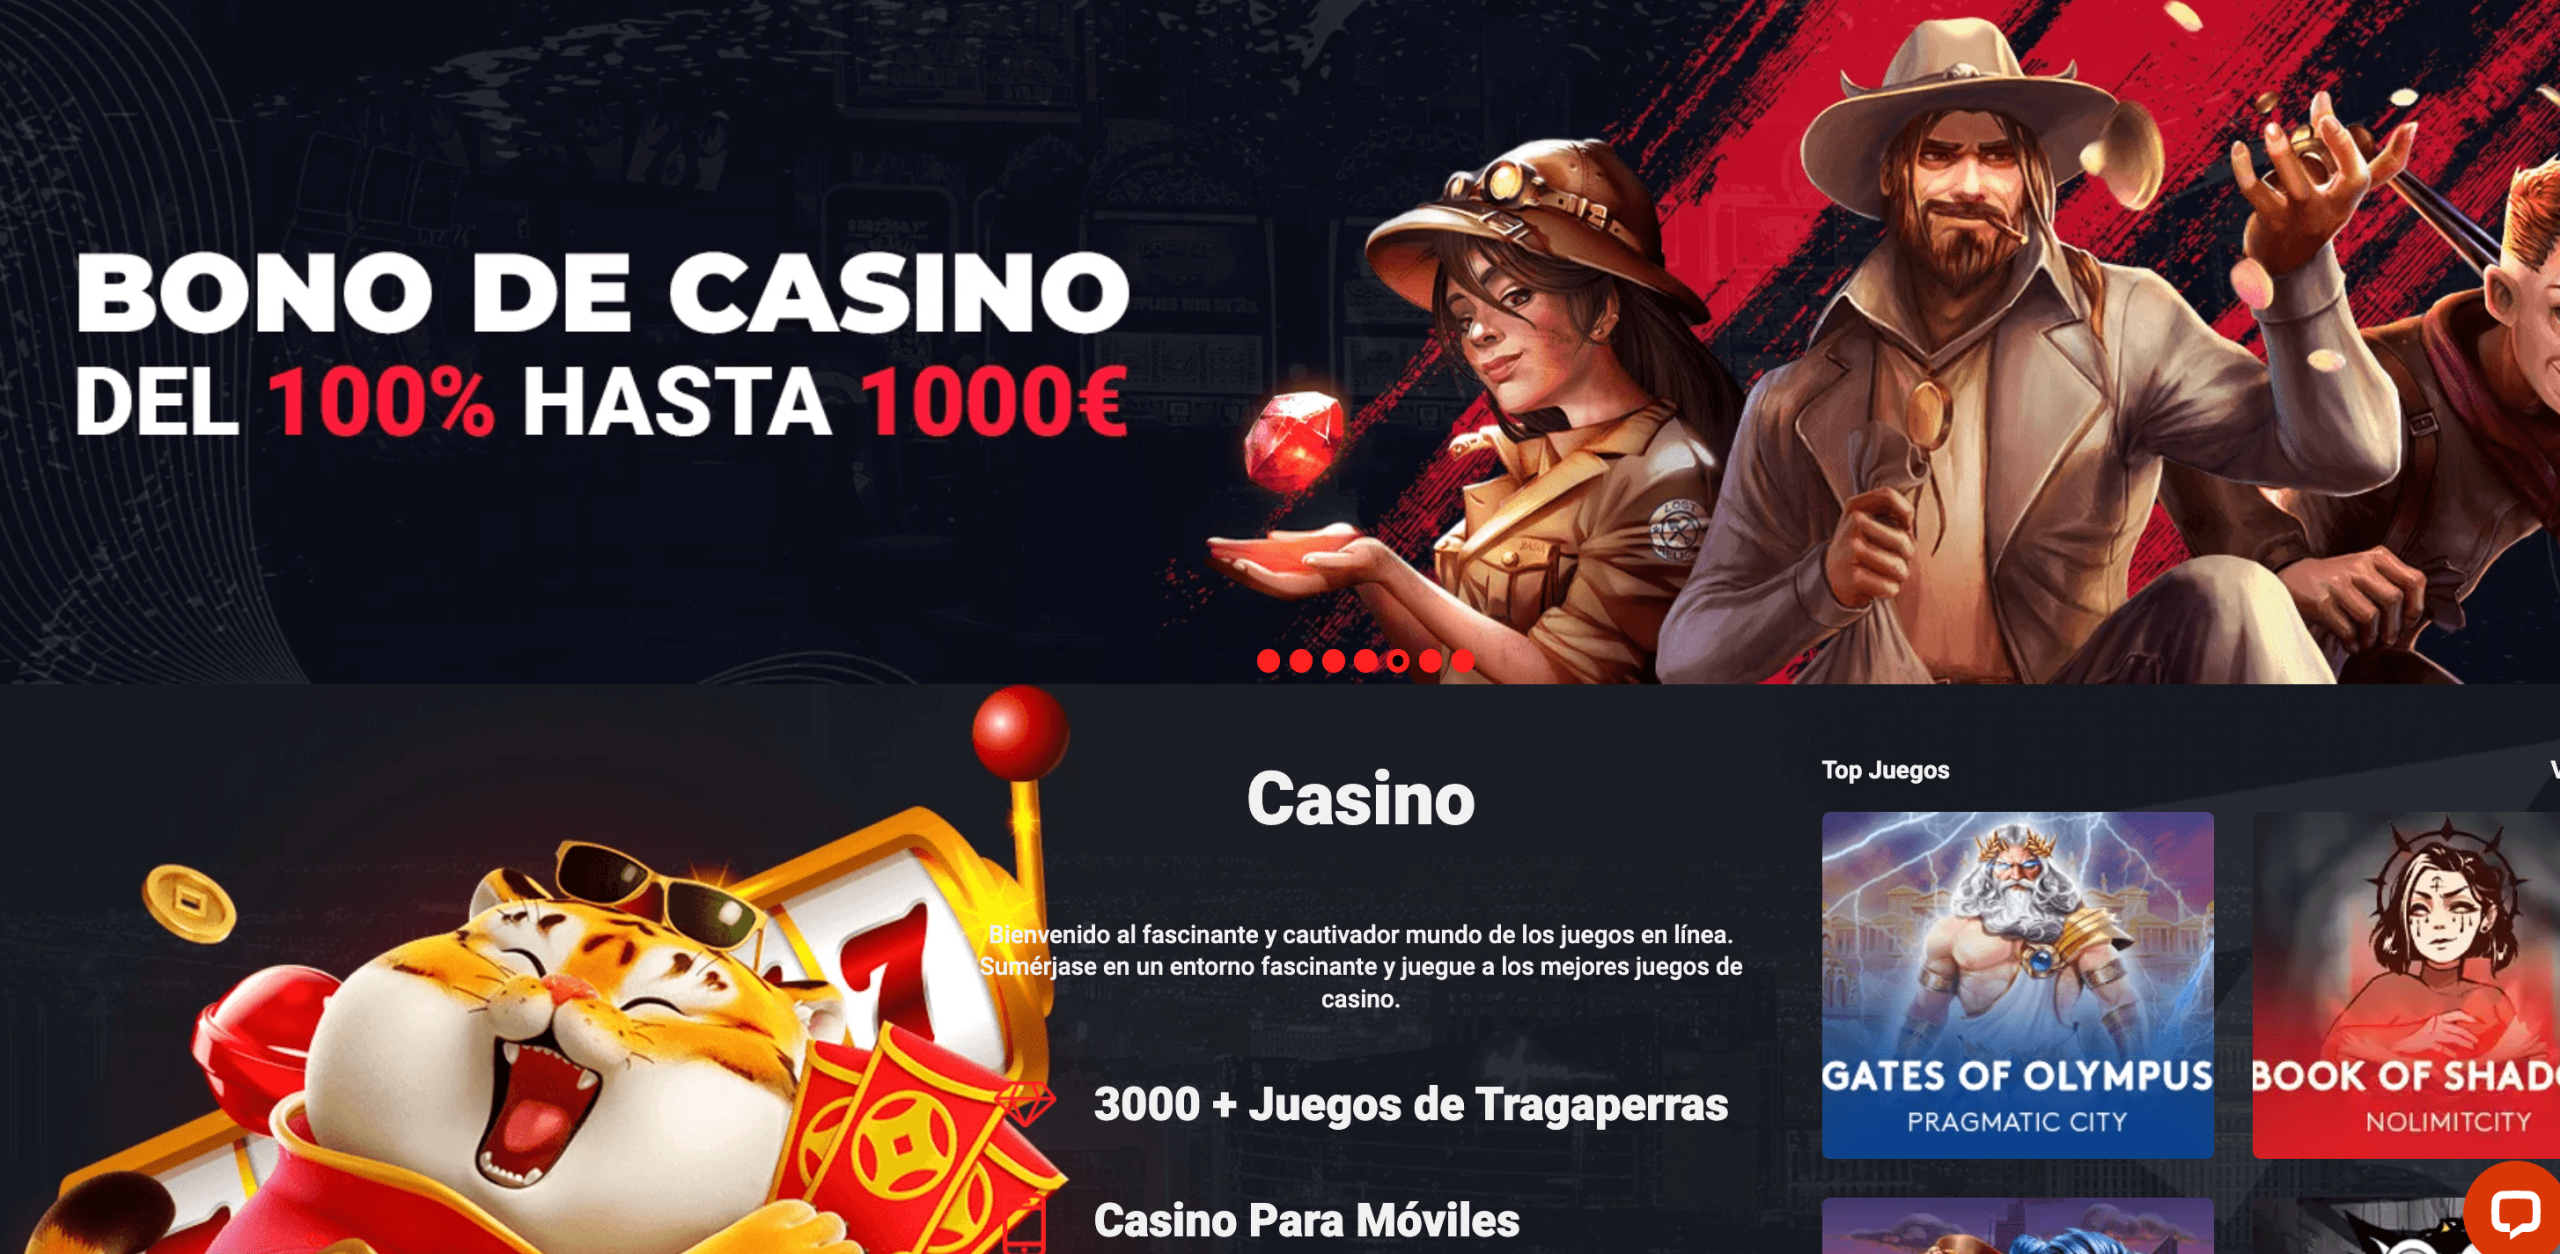 Opciones de entretenimiento en casinos virtuales para Año Nuevo